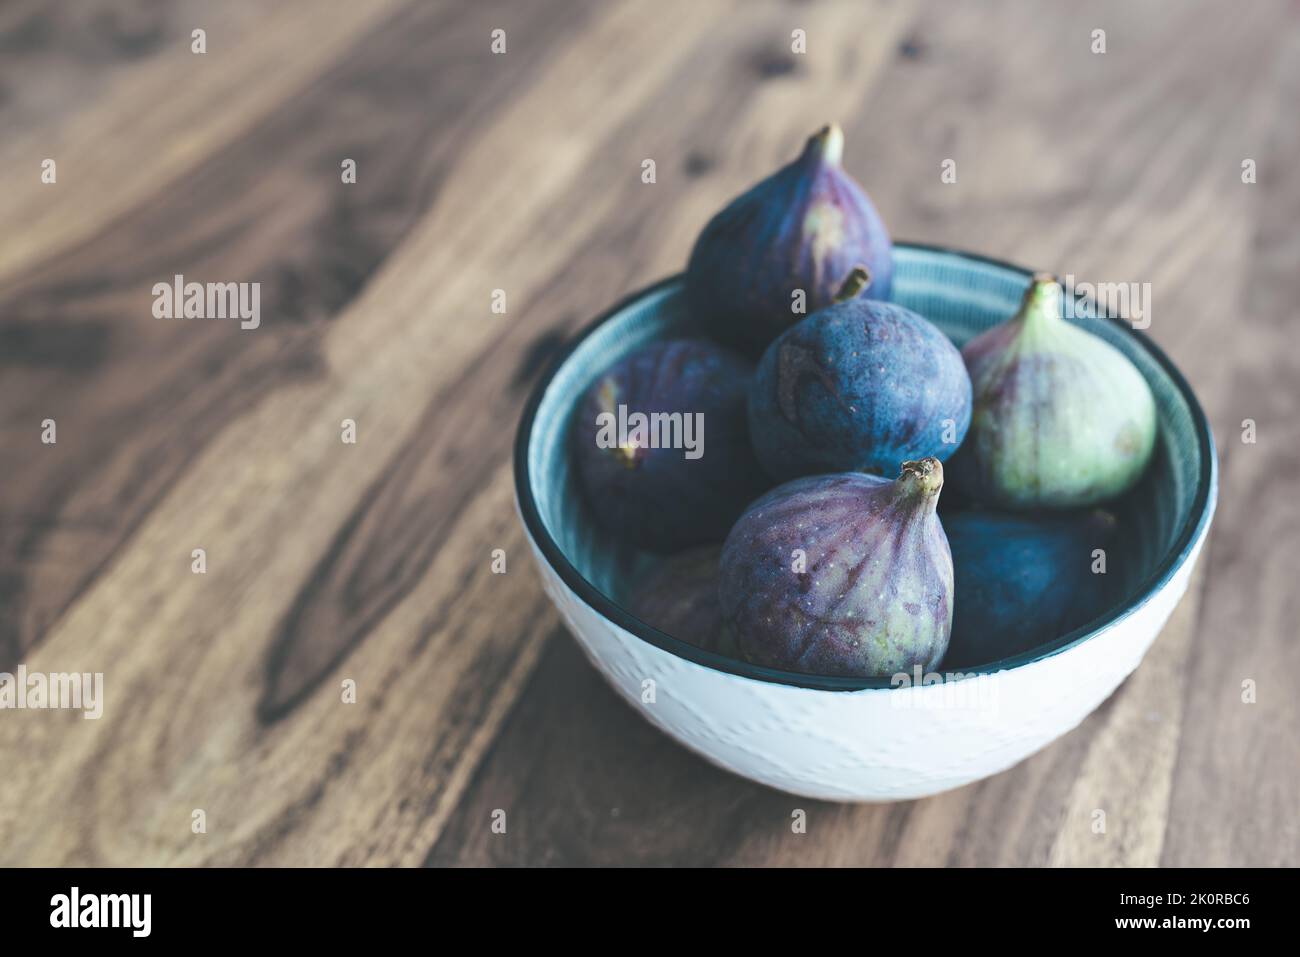 vue en grand angle des figues fraîches dans un bol sur une table en bois Banque D'Images